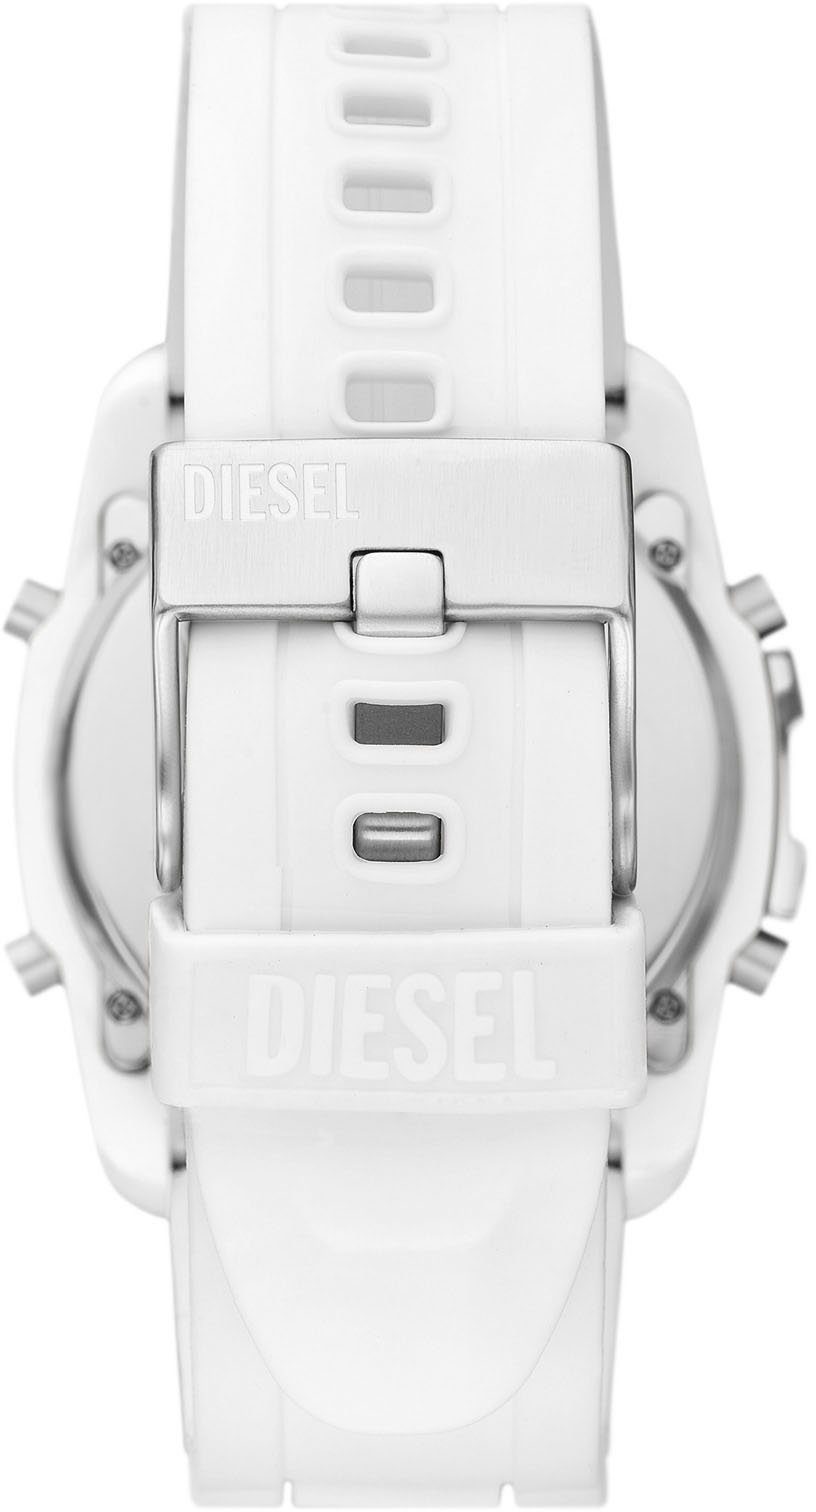 DZ2157 MASTER Digitaluhr CHIEF, Diesel